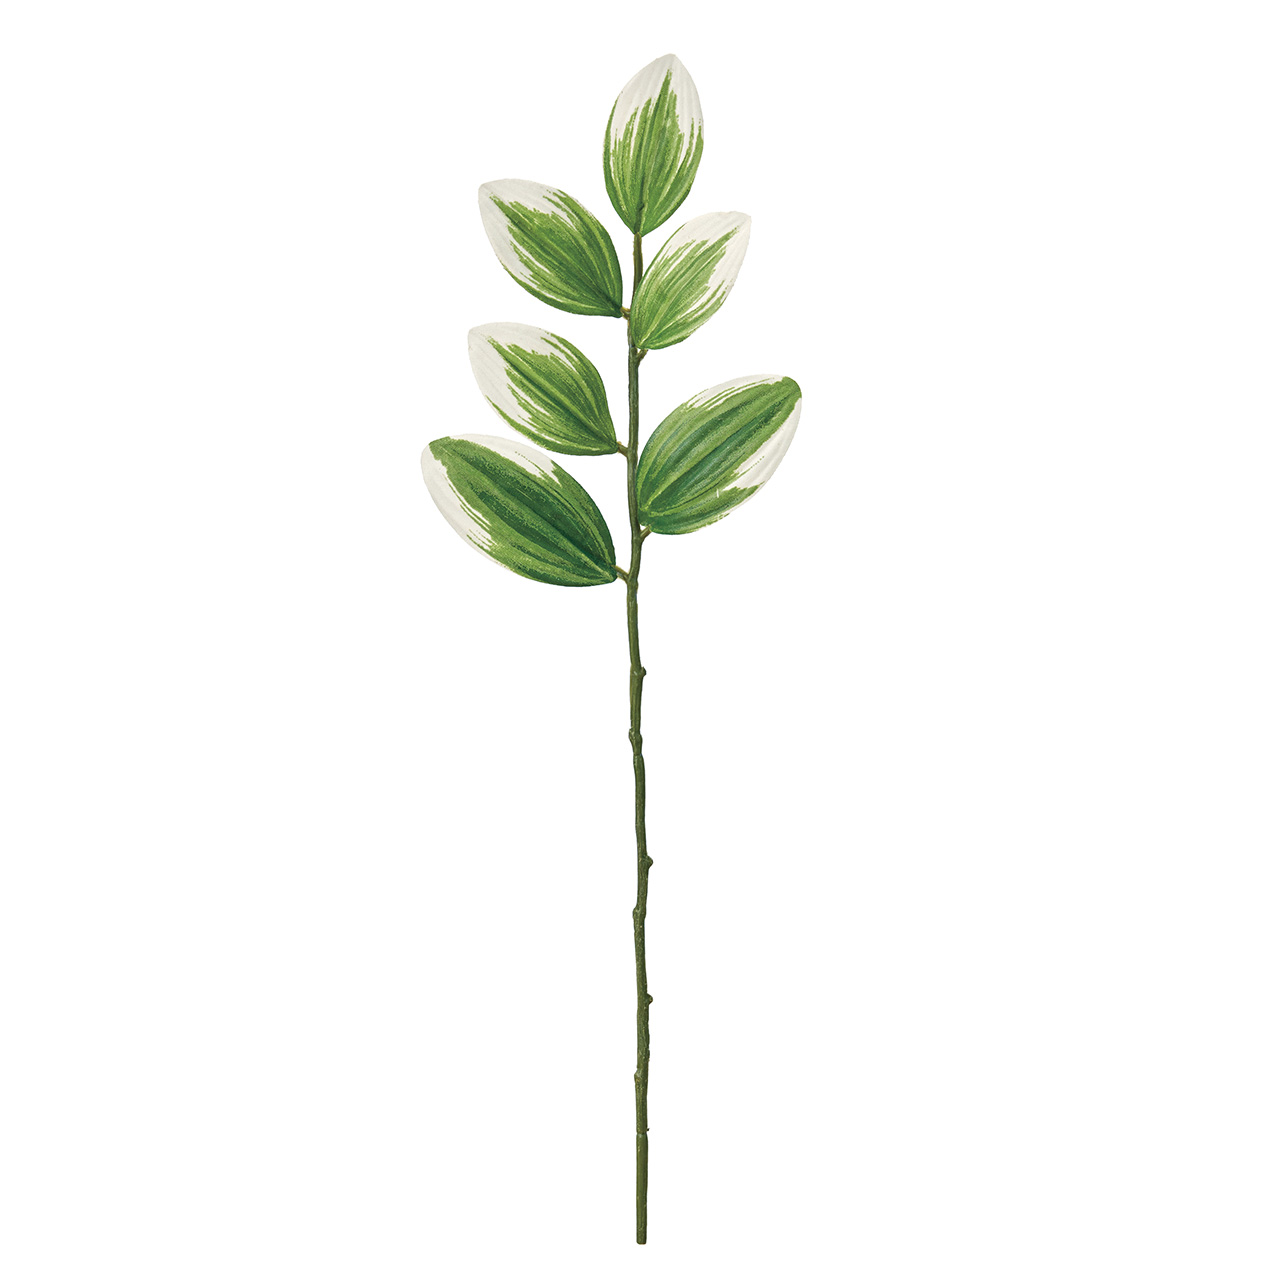 マイフラ 通販 Magiq ナルコランショート アーティフィシャルグリーン 造花 ナルコラン Fg 長さ 約30cm グリーン Magiq アーティフィシャルフラワー 造花 全国にmagiq 花器 花資材などをお届けします